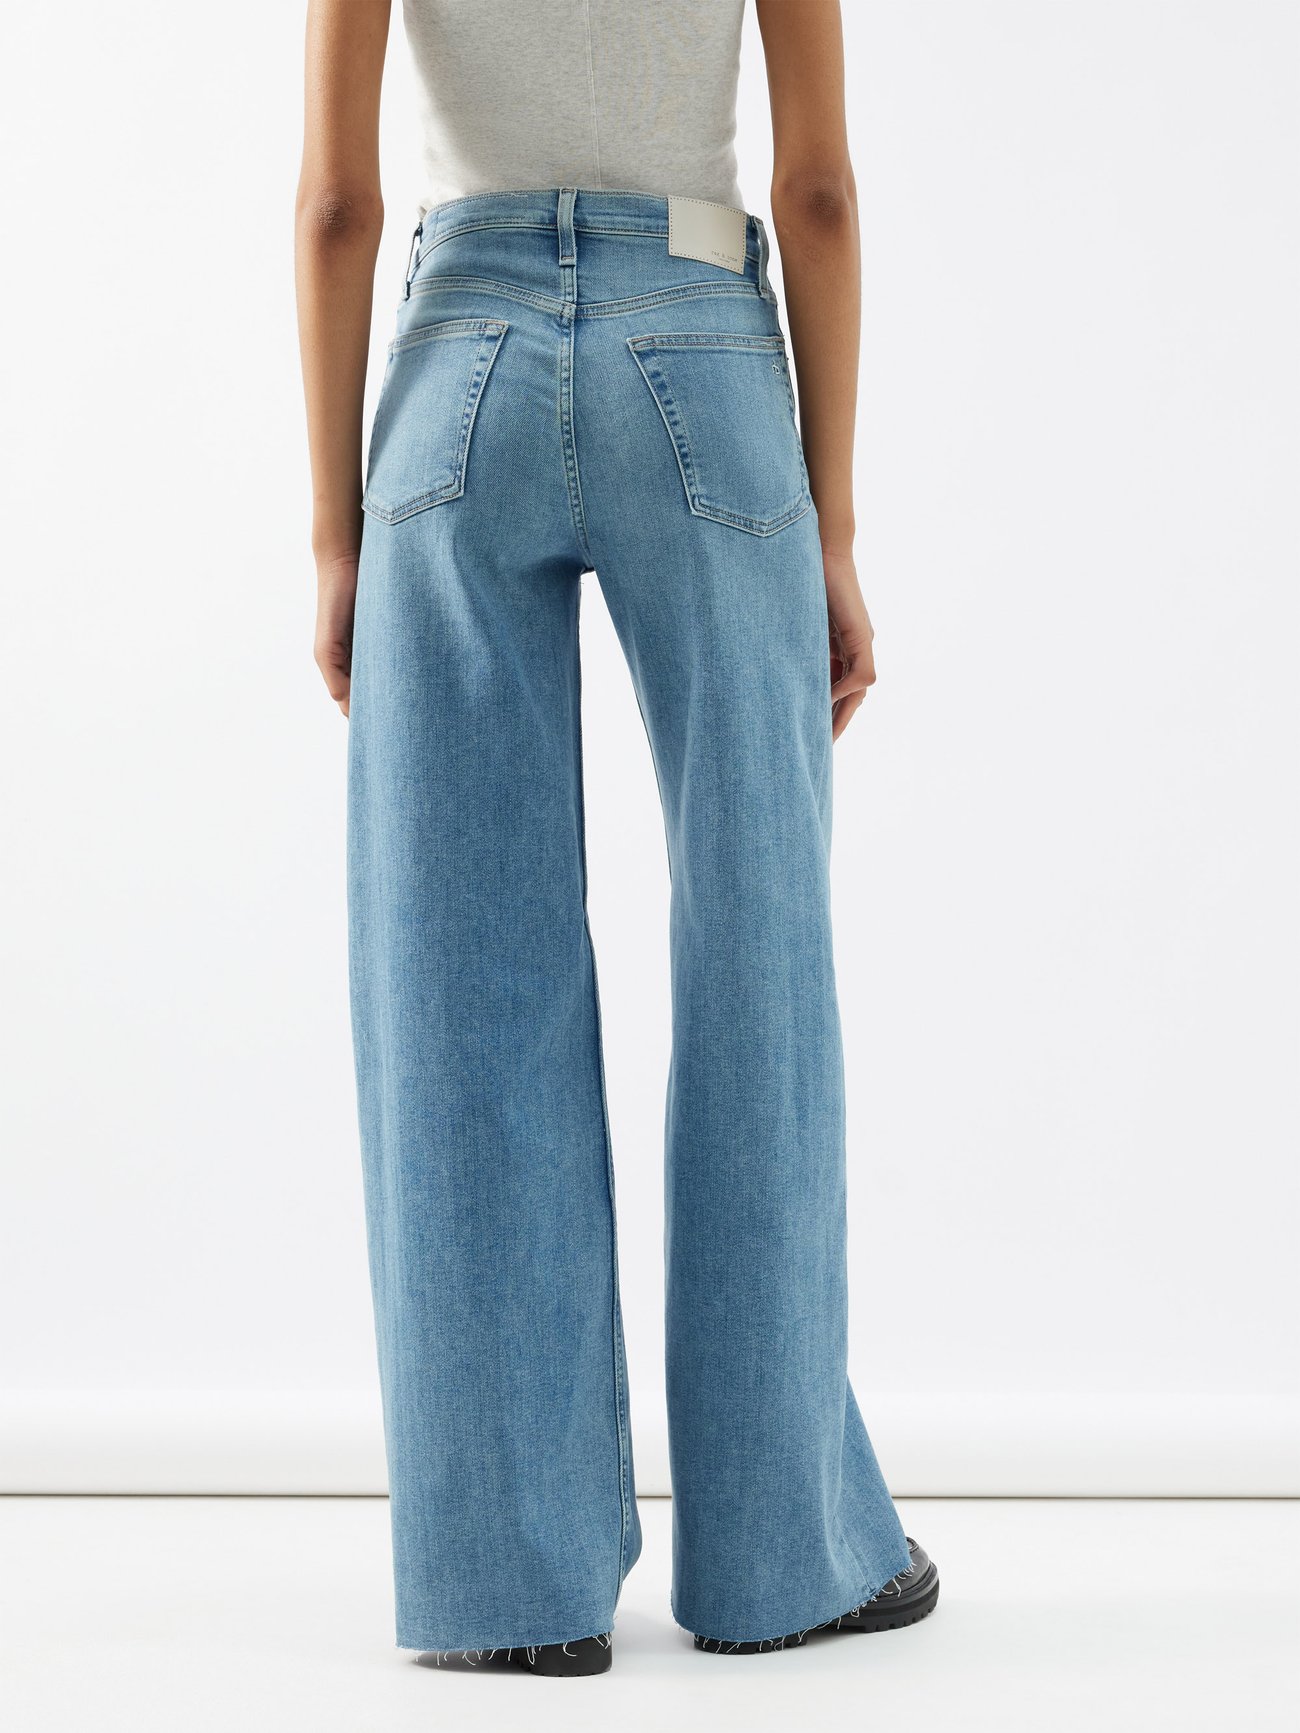 Sofie high-waist jeans